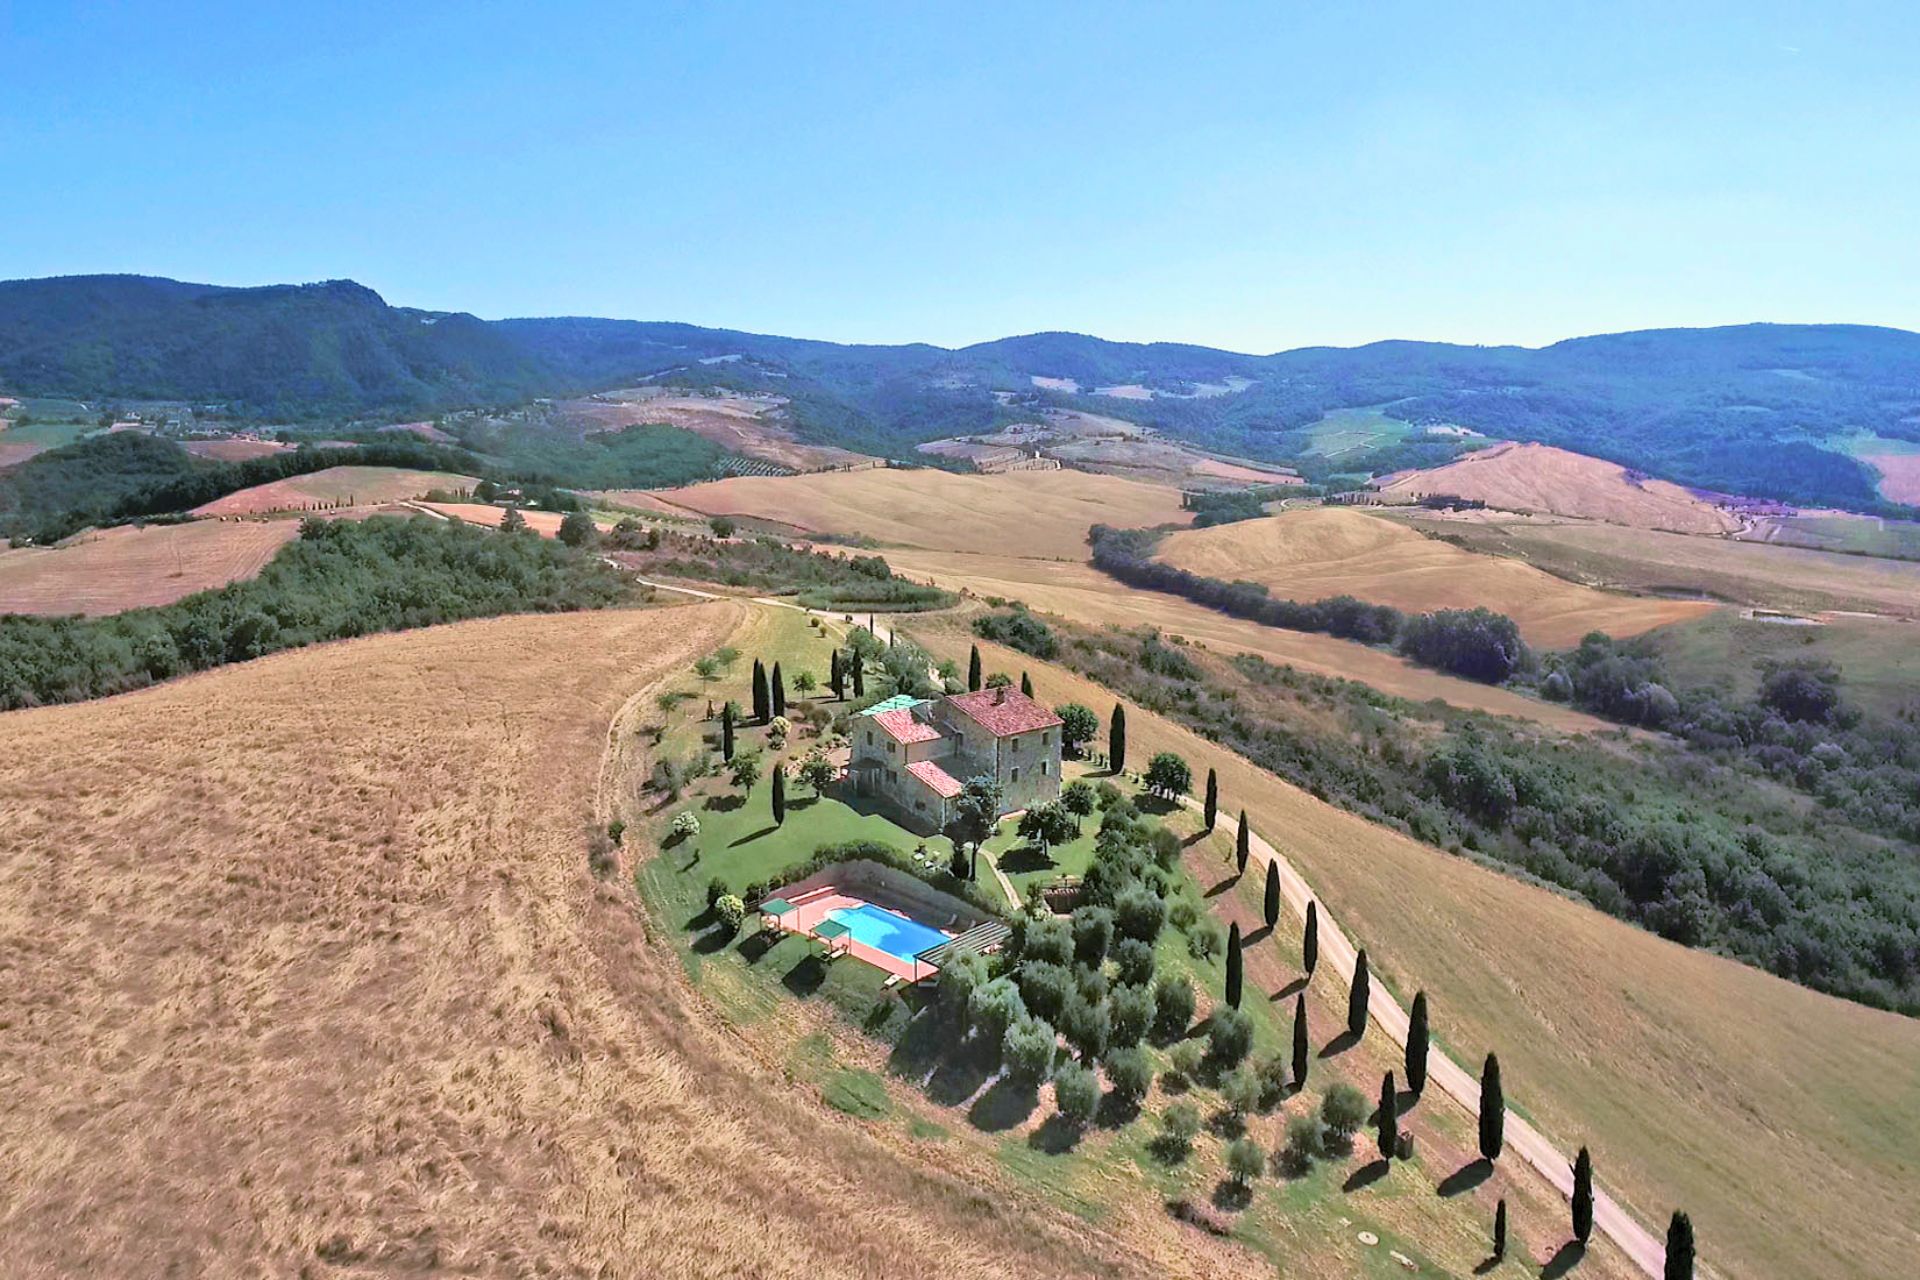 Vita in campagna, tra i poderi ristrutturati nei paesaggi da sogno di Umbria e Toscana